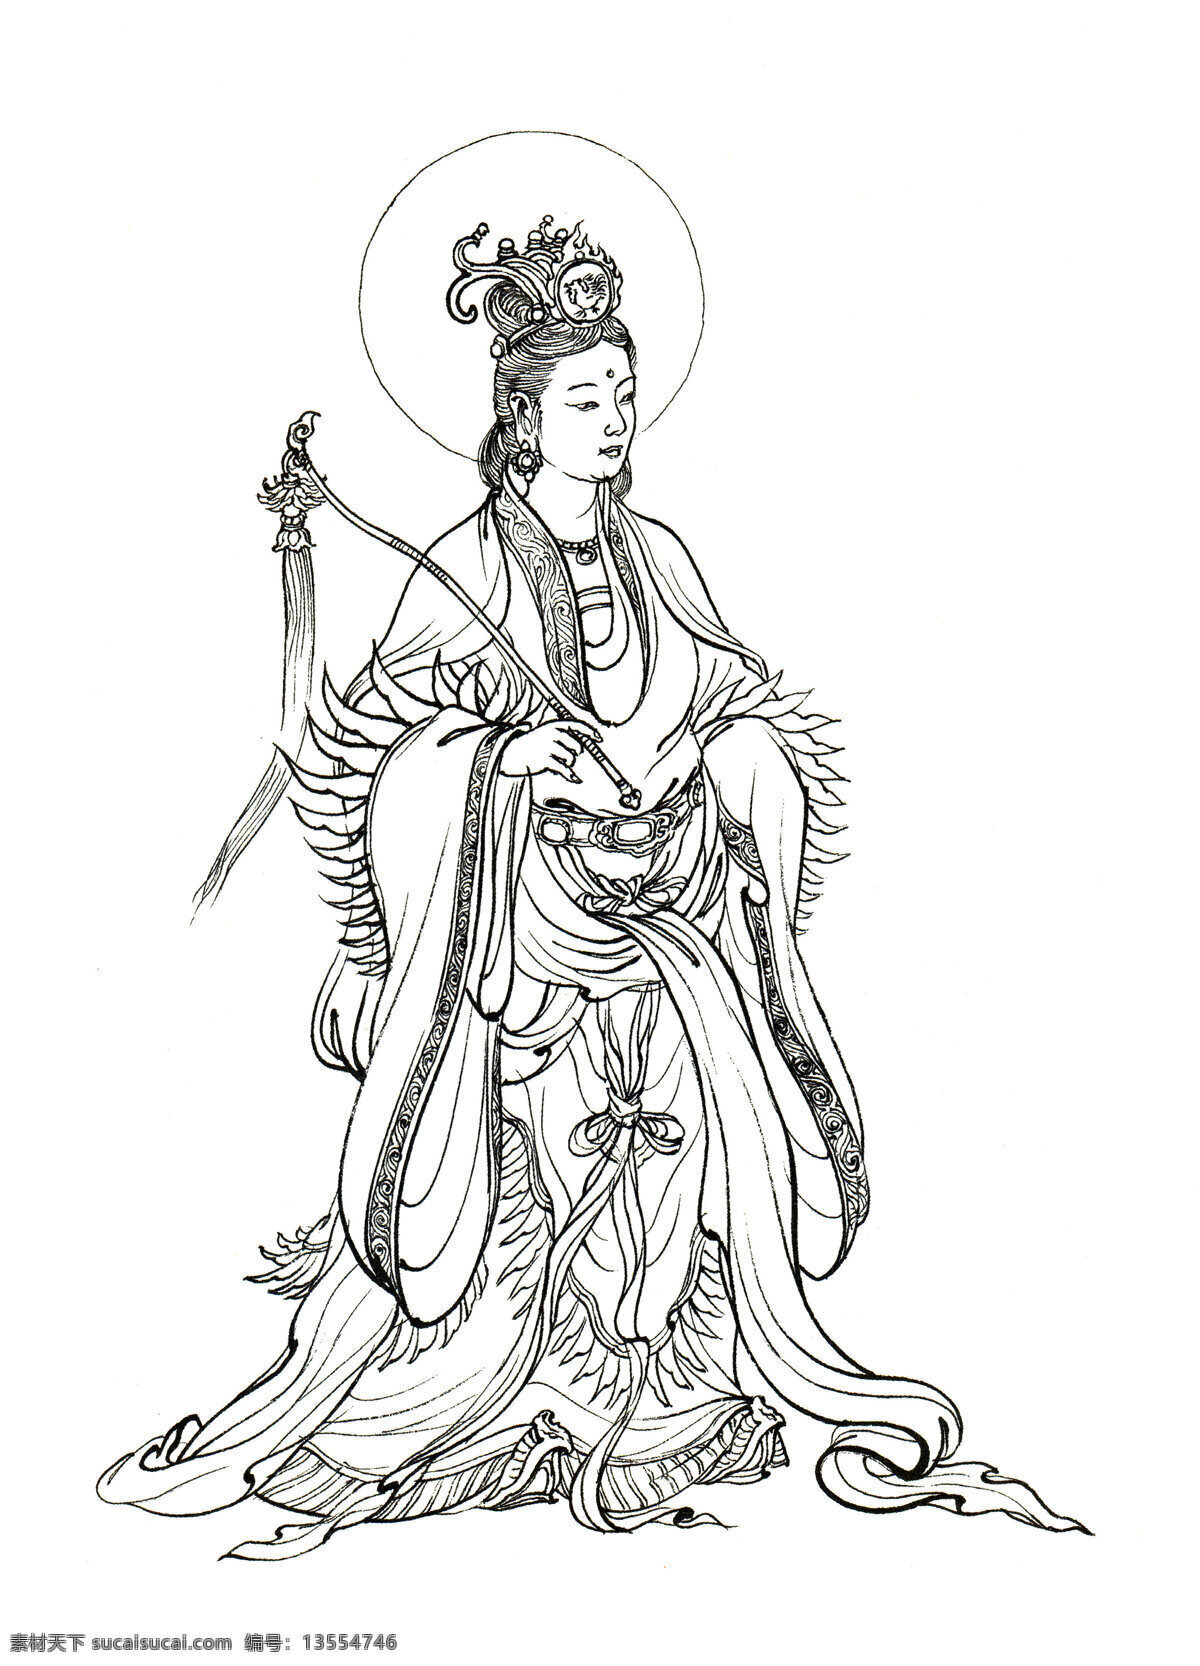 西游记 人物白描 毗蓝菩萨 老母鸡 佛教 神话人物 白描 李 云中 文化艺术 绘画书法